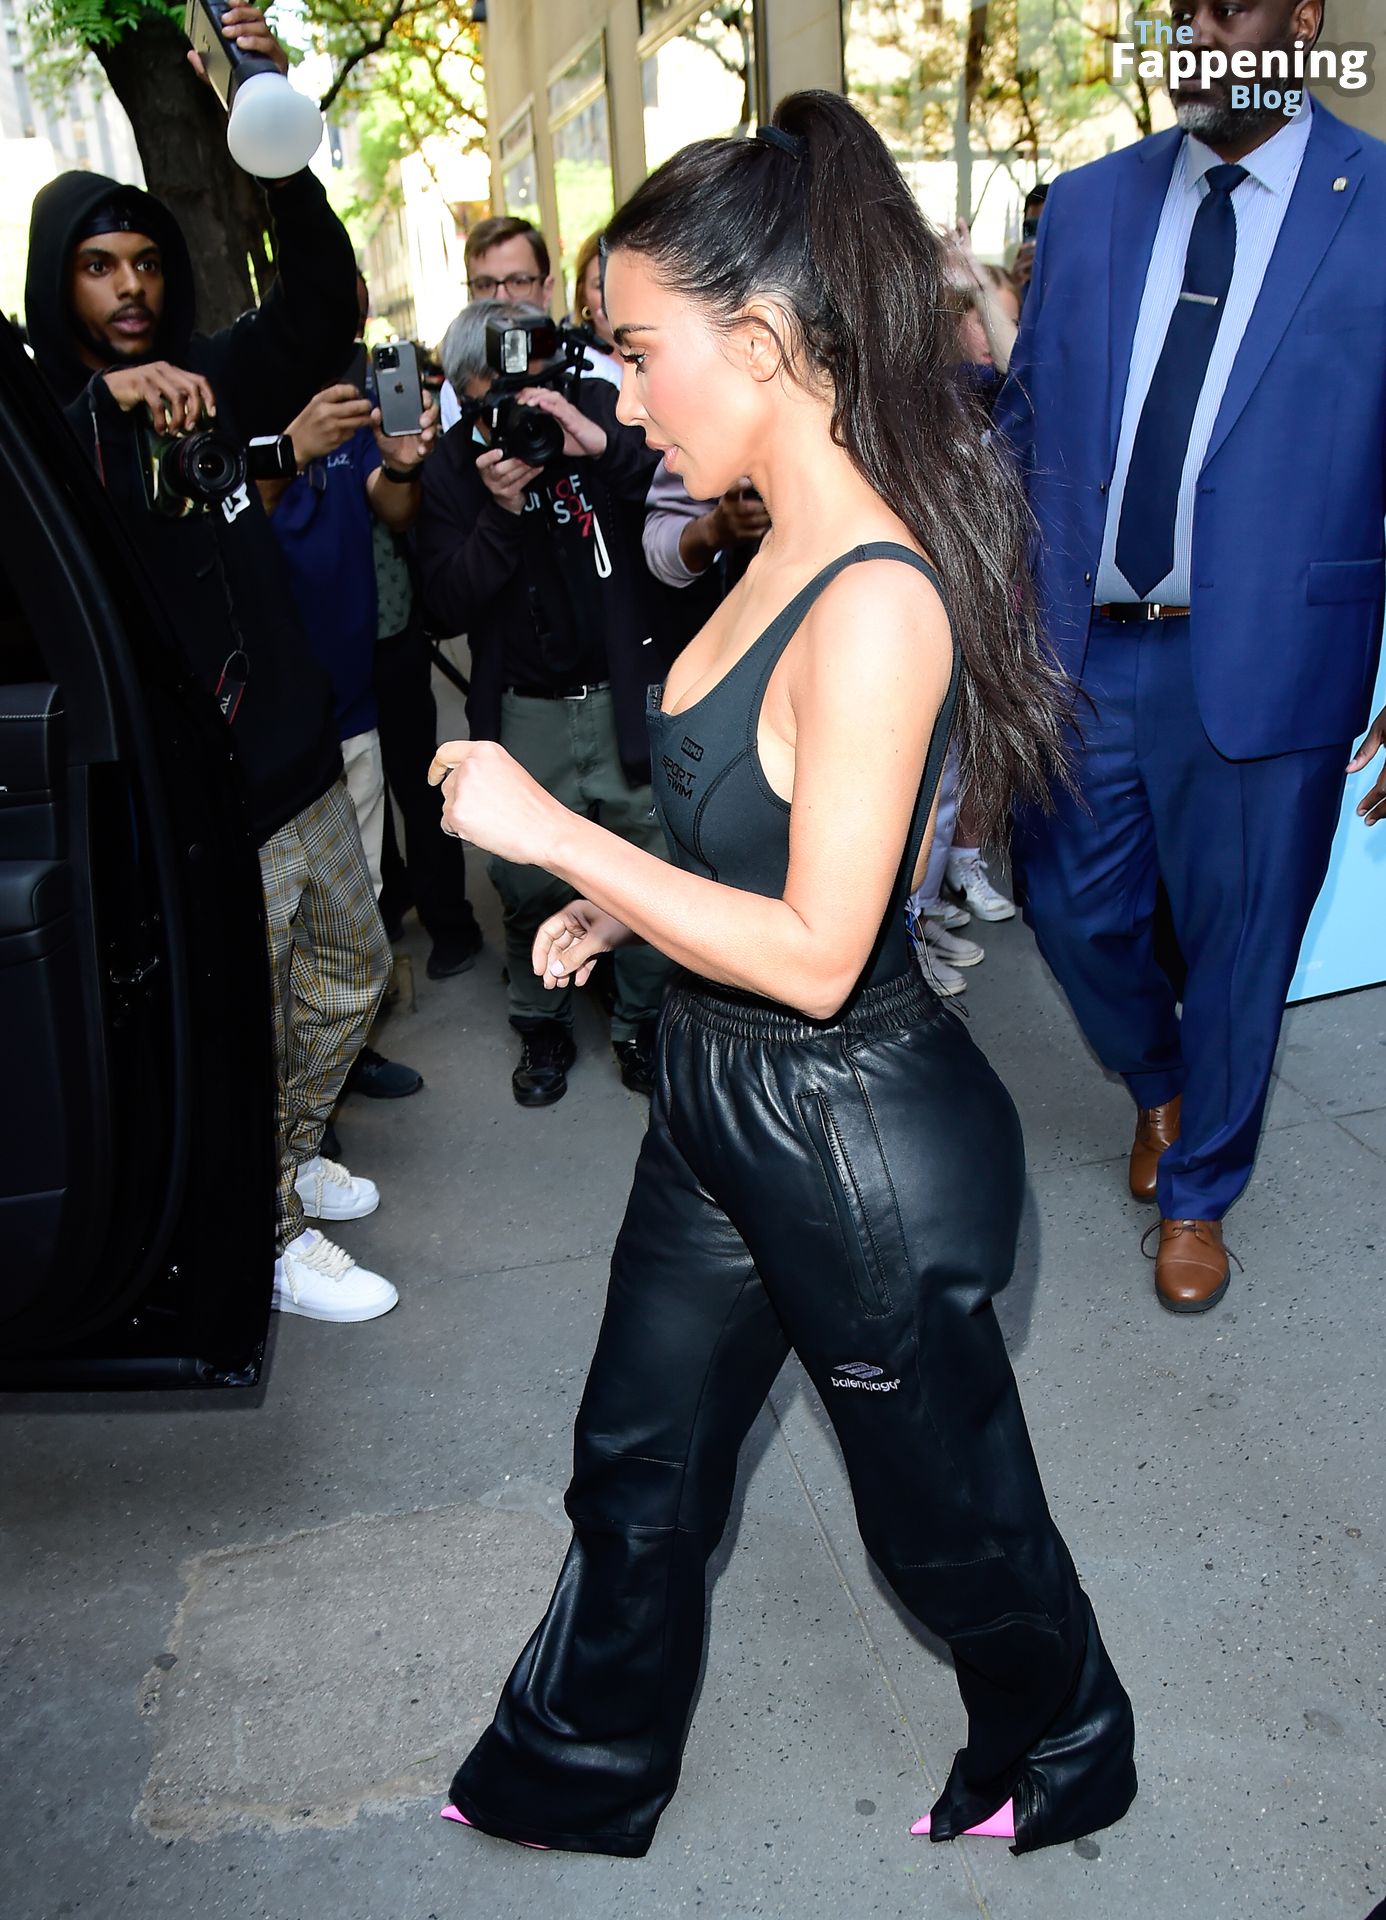 Kim-Kardashian-Sexy-The-Fappening-Blog-117-1.jpg